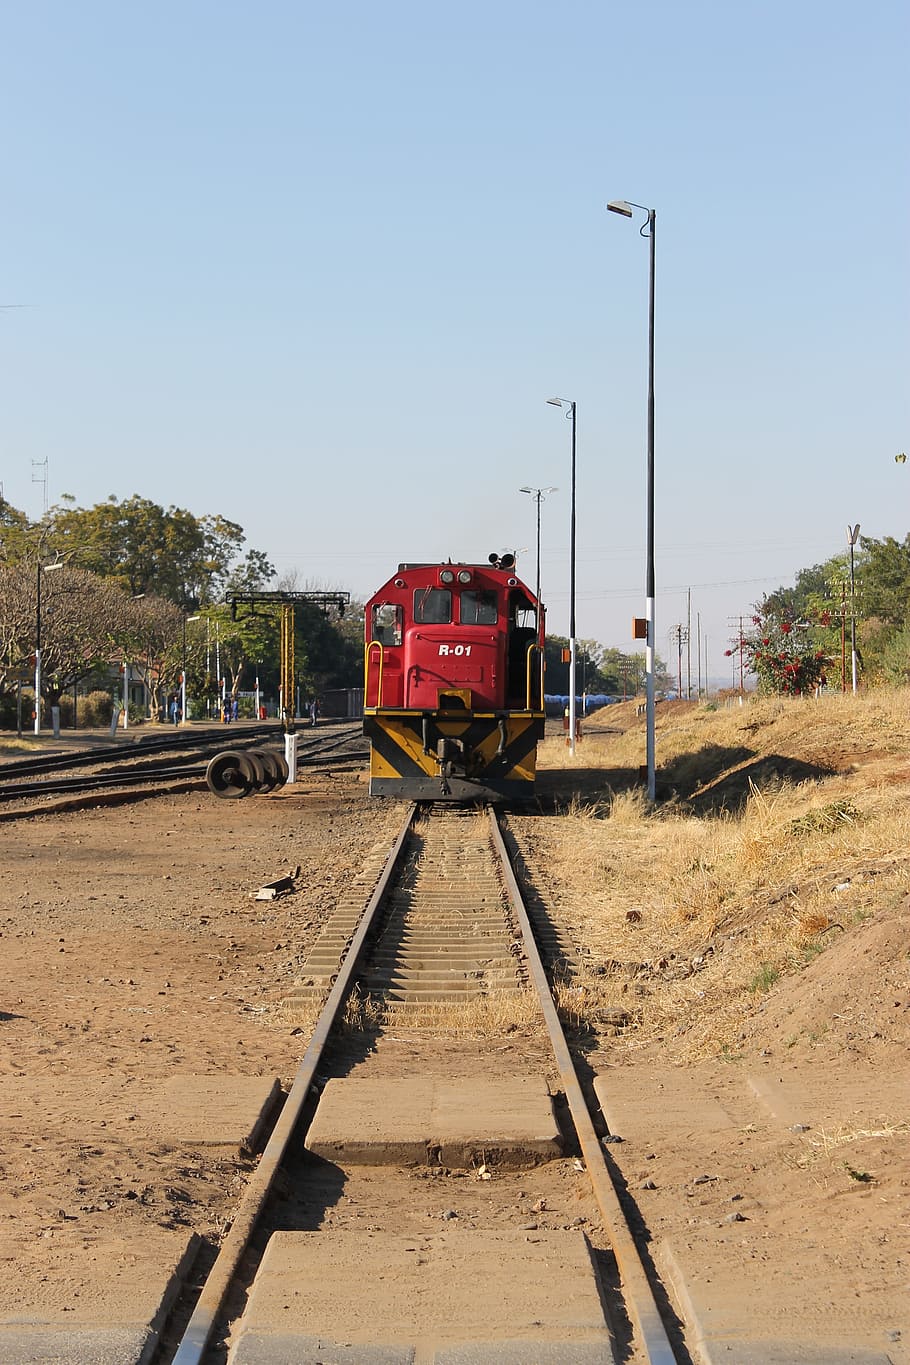 기차, 기차 트랙, 짐바브웨, 철도 운송, 선로, 철도 선로, 하늘, 교통, 운송 수단, 자연